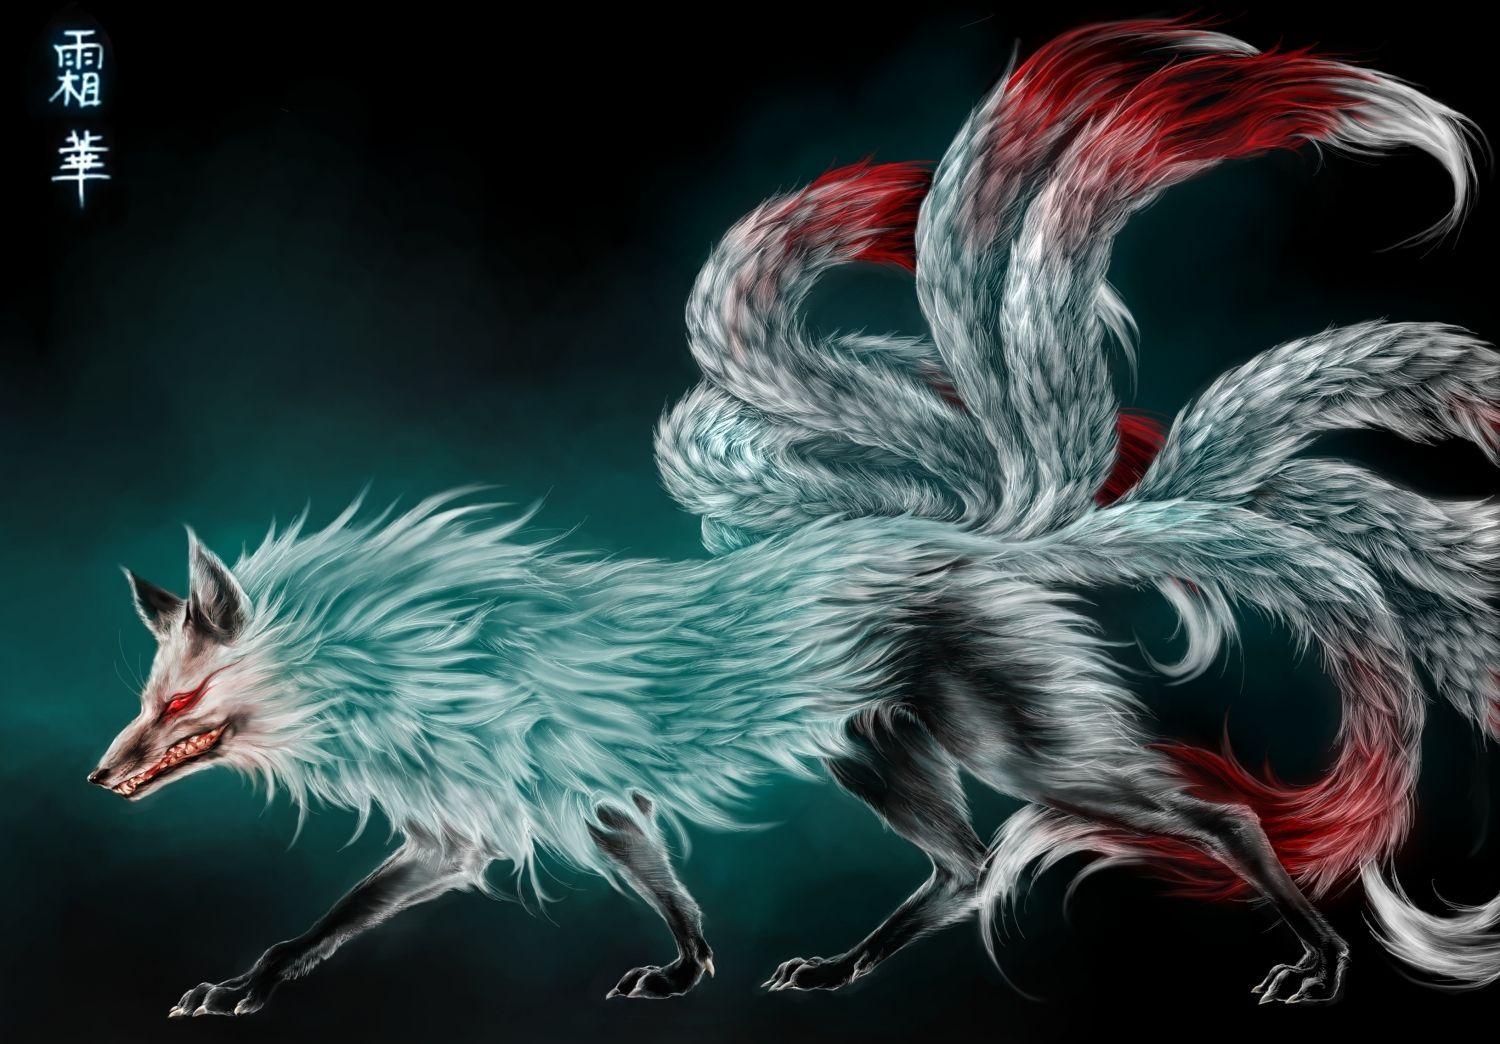 Spectacular Mythological Beasts Illustrations. Kitsune